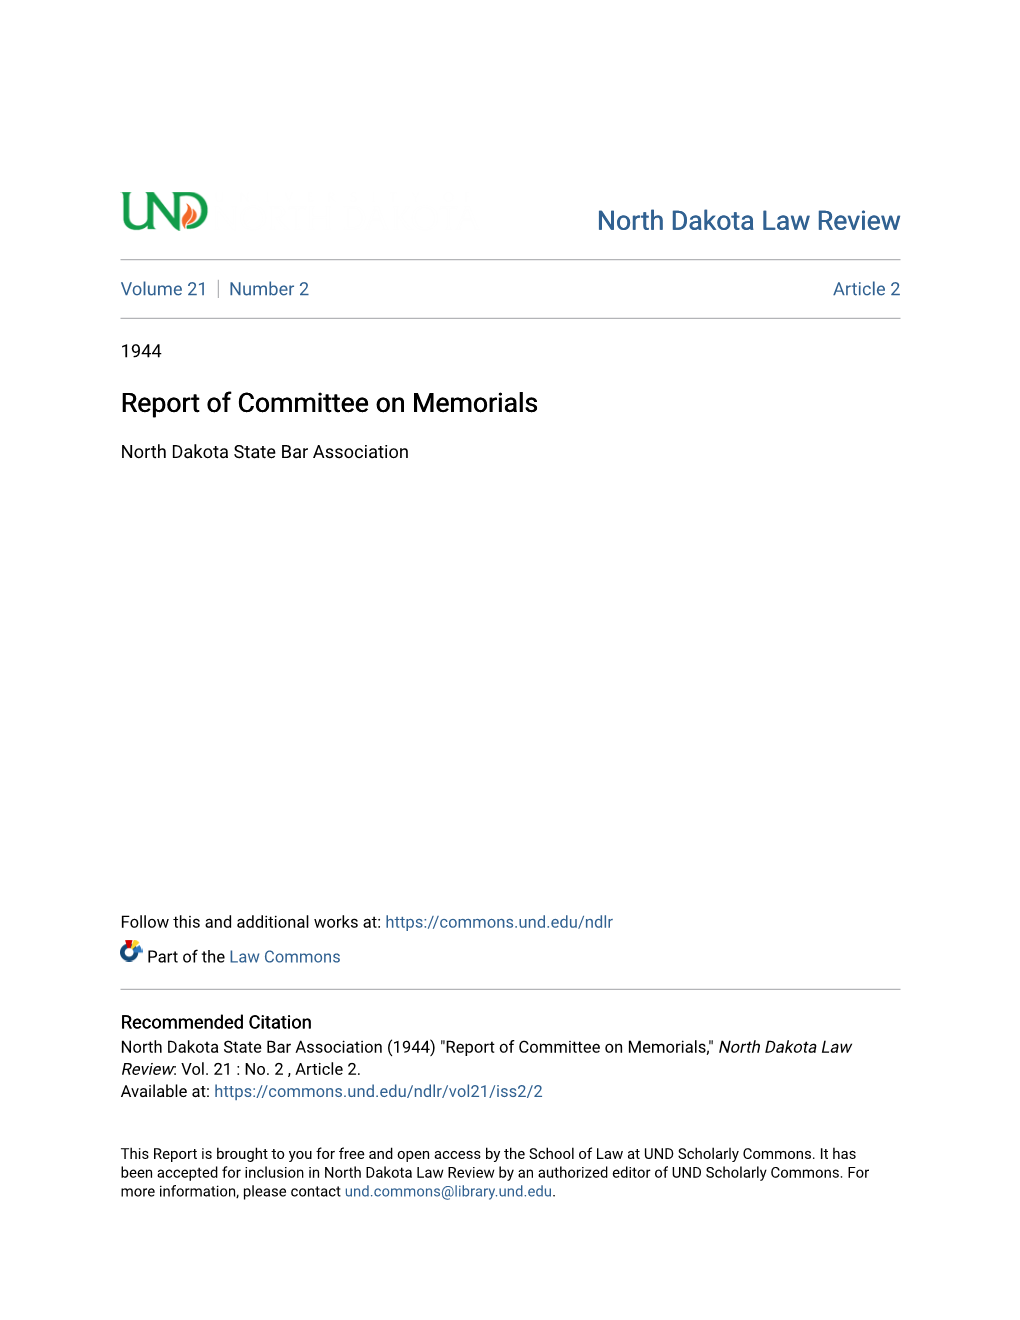 Report of Committee on Memorials